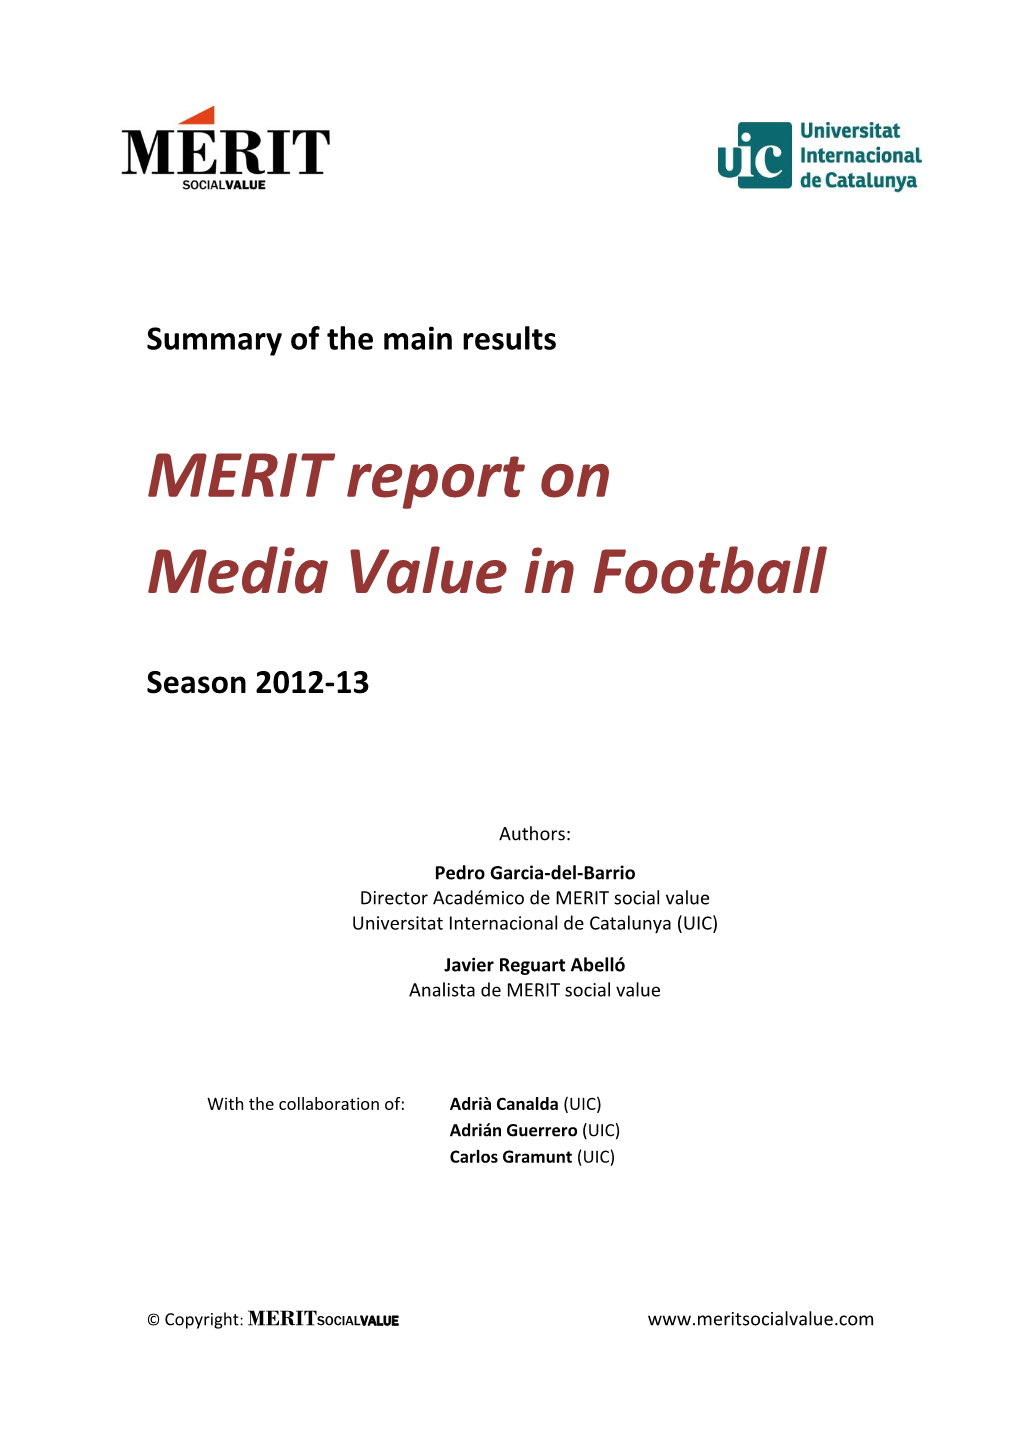 MERIT Report on Media Value in Football